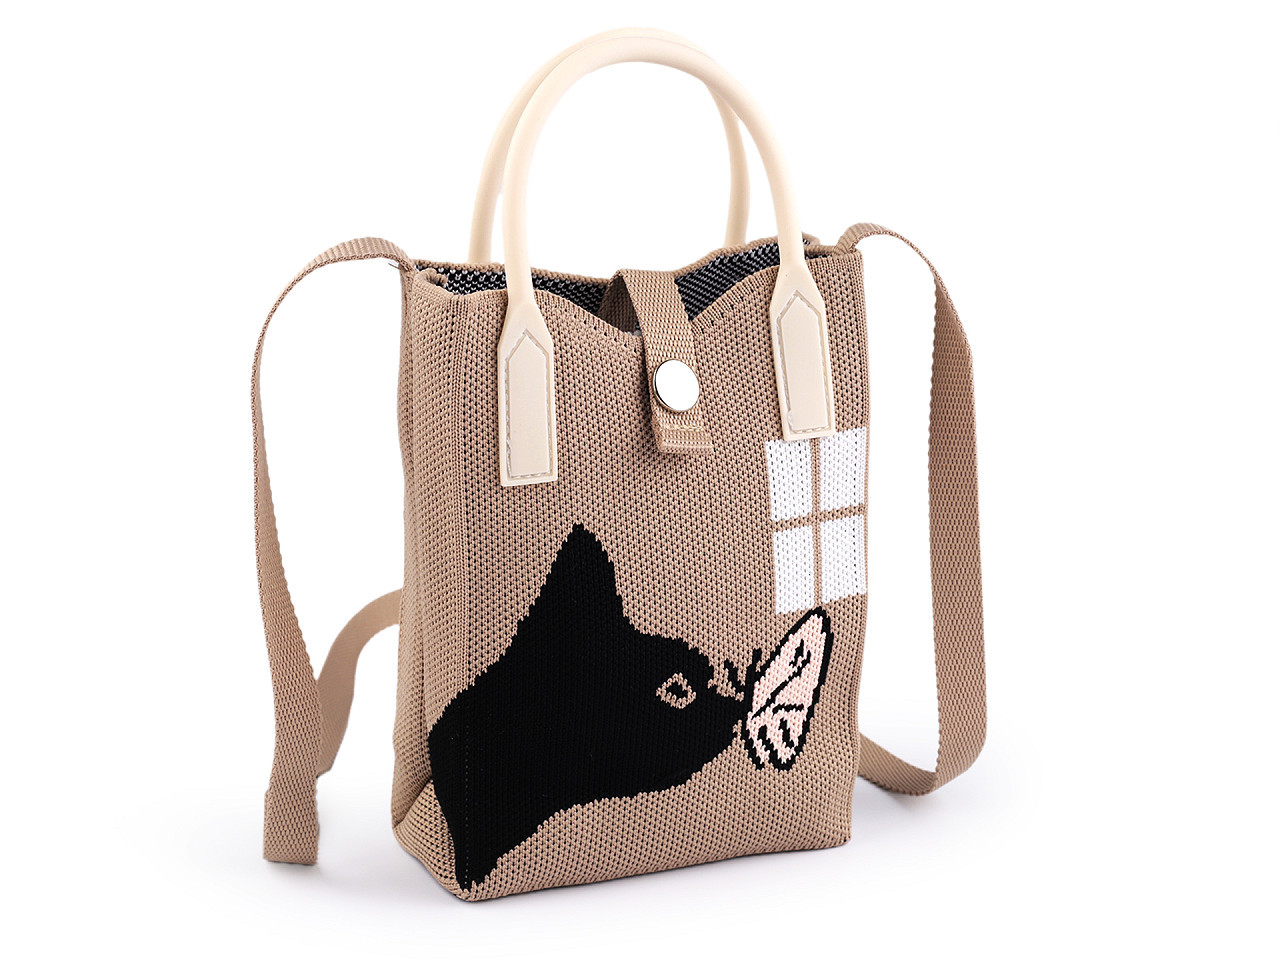 Dívčí textilní kabelka / taška kočka 12x18 cm, barva 3 béžová